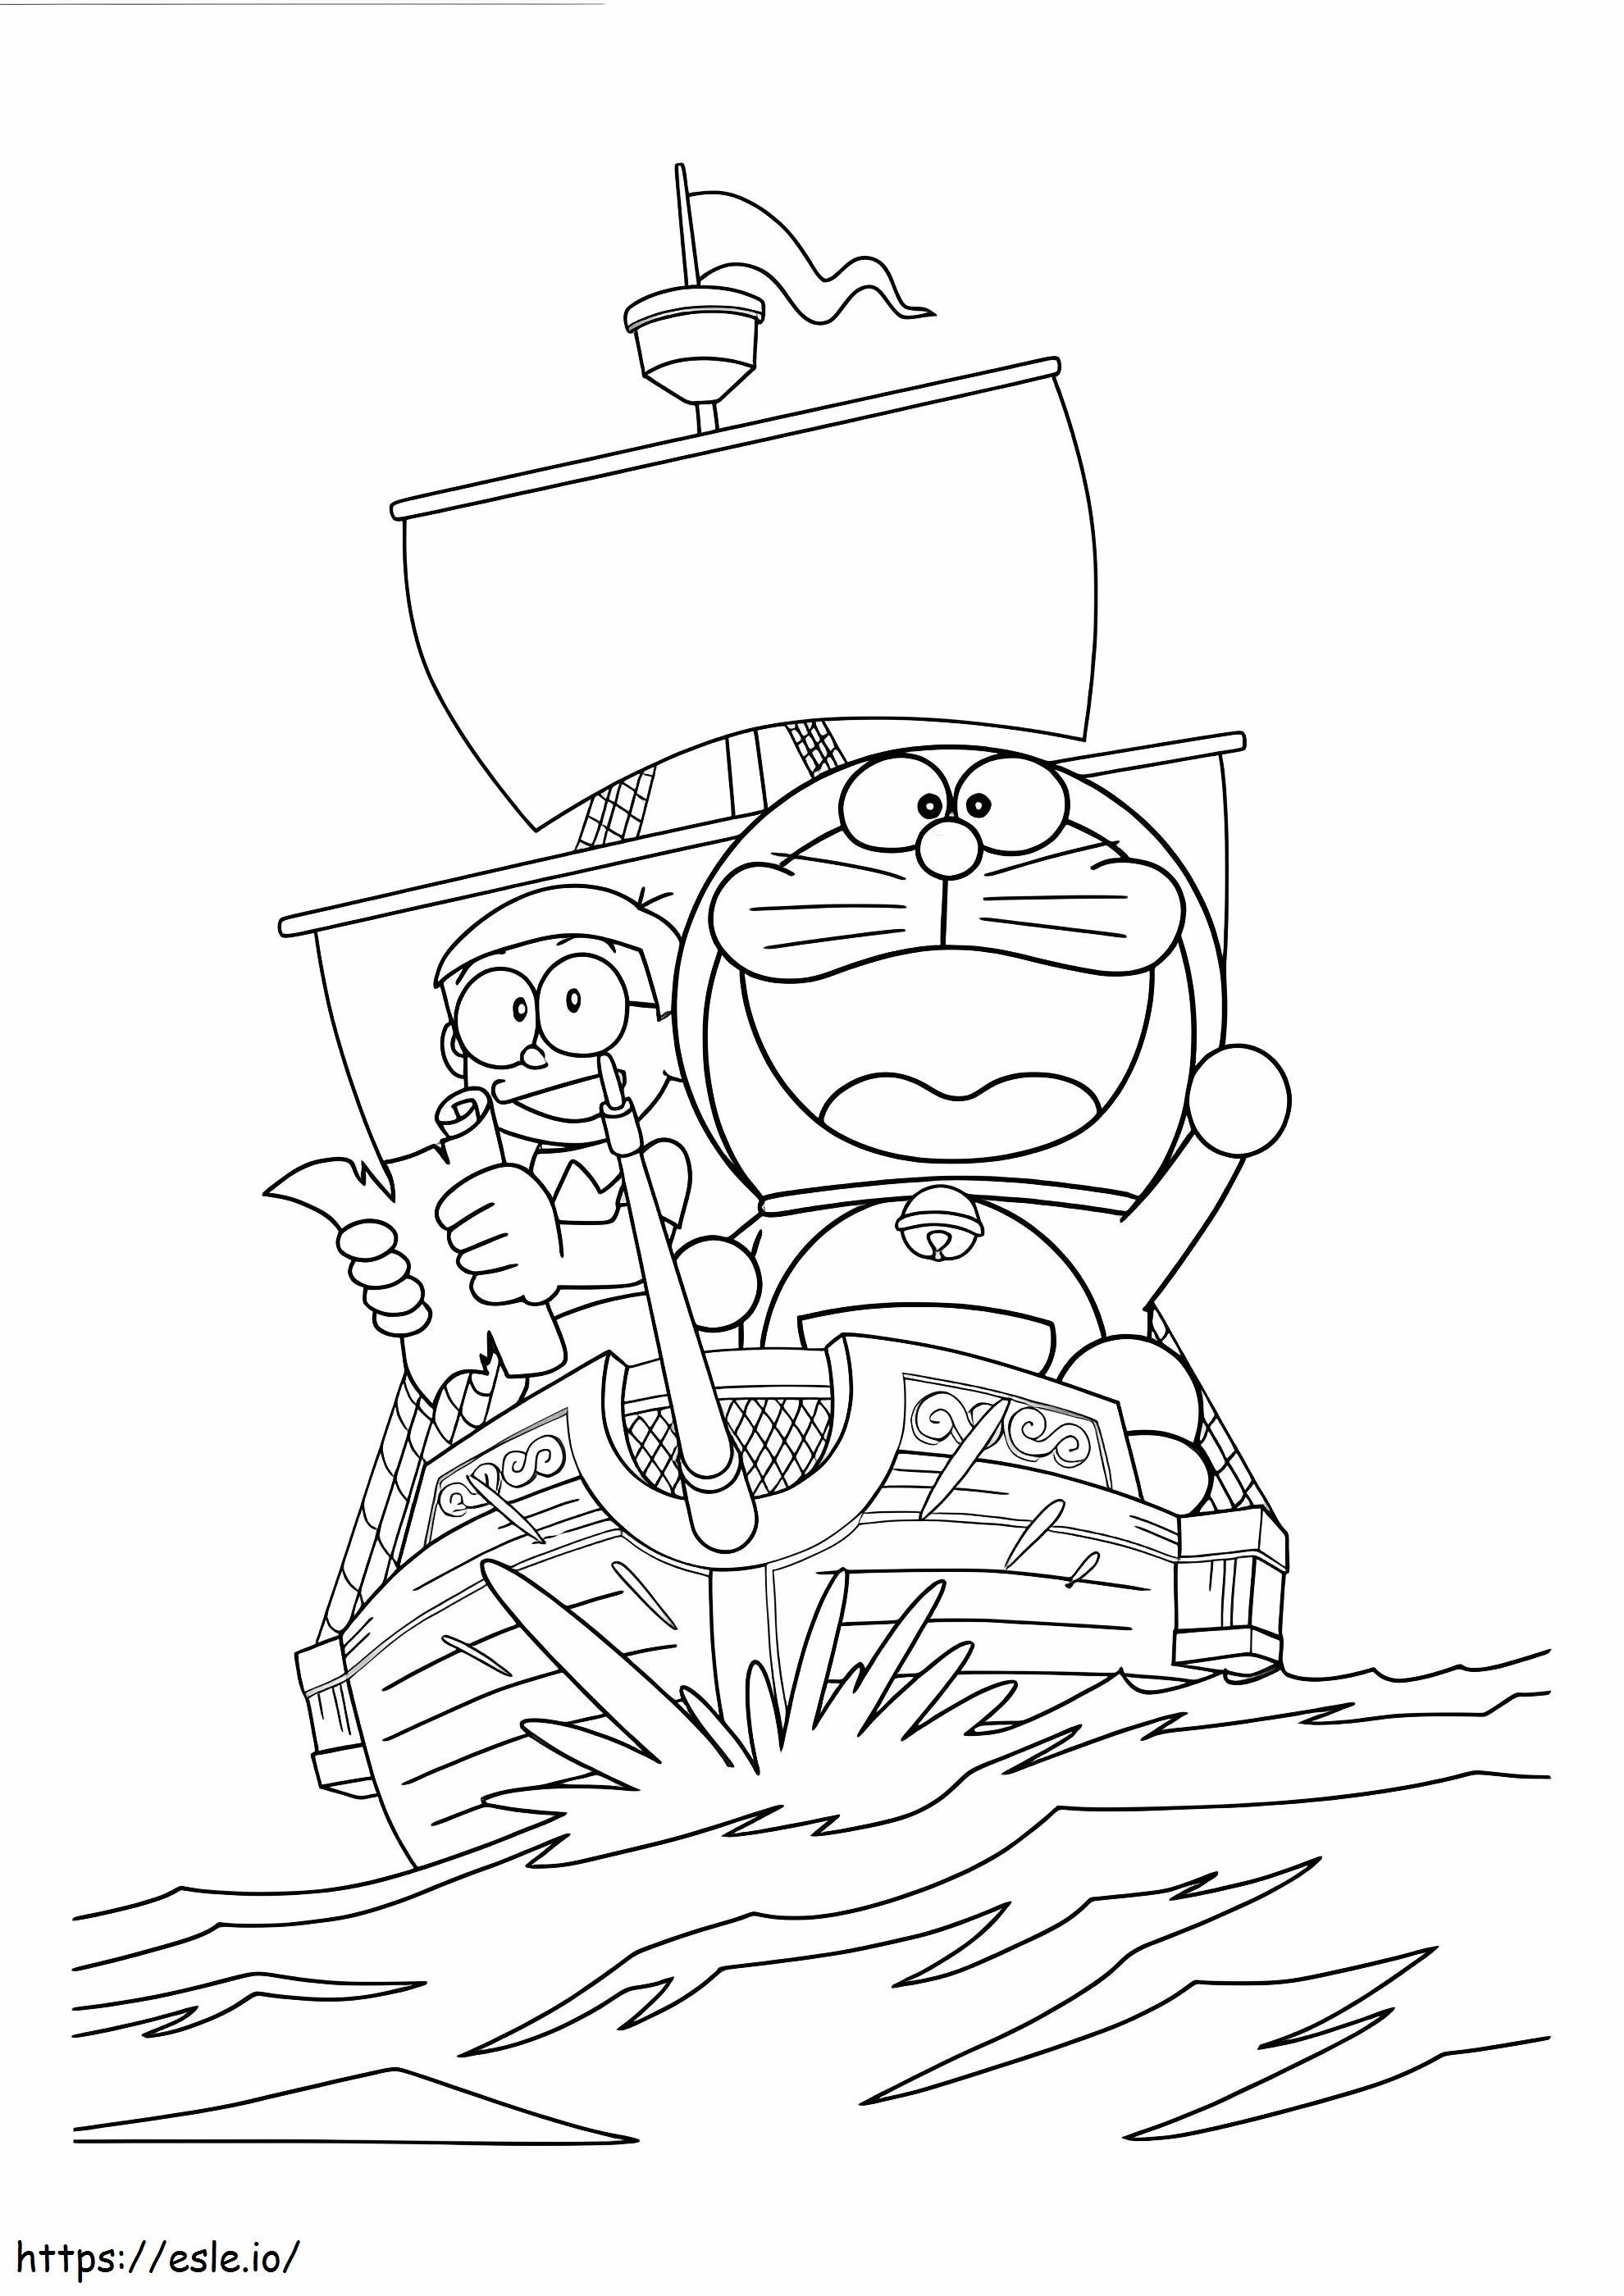 Nobita y Doraemon navegan en el barco para colorear